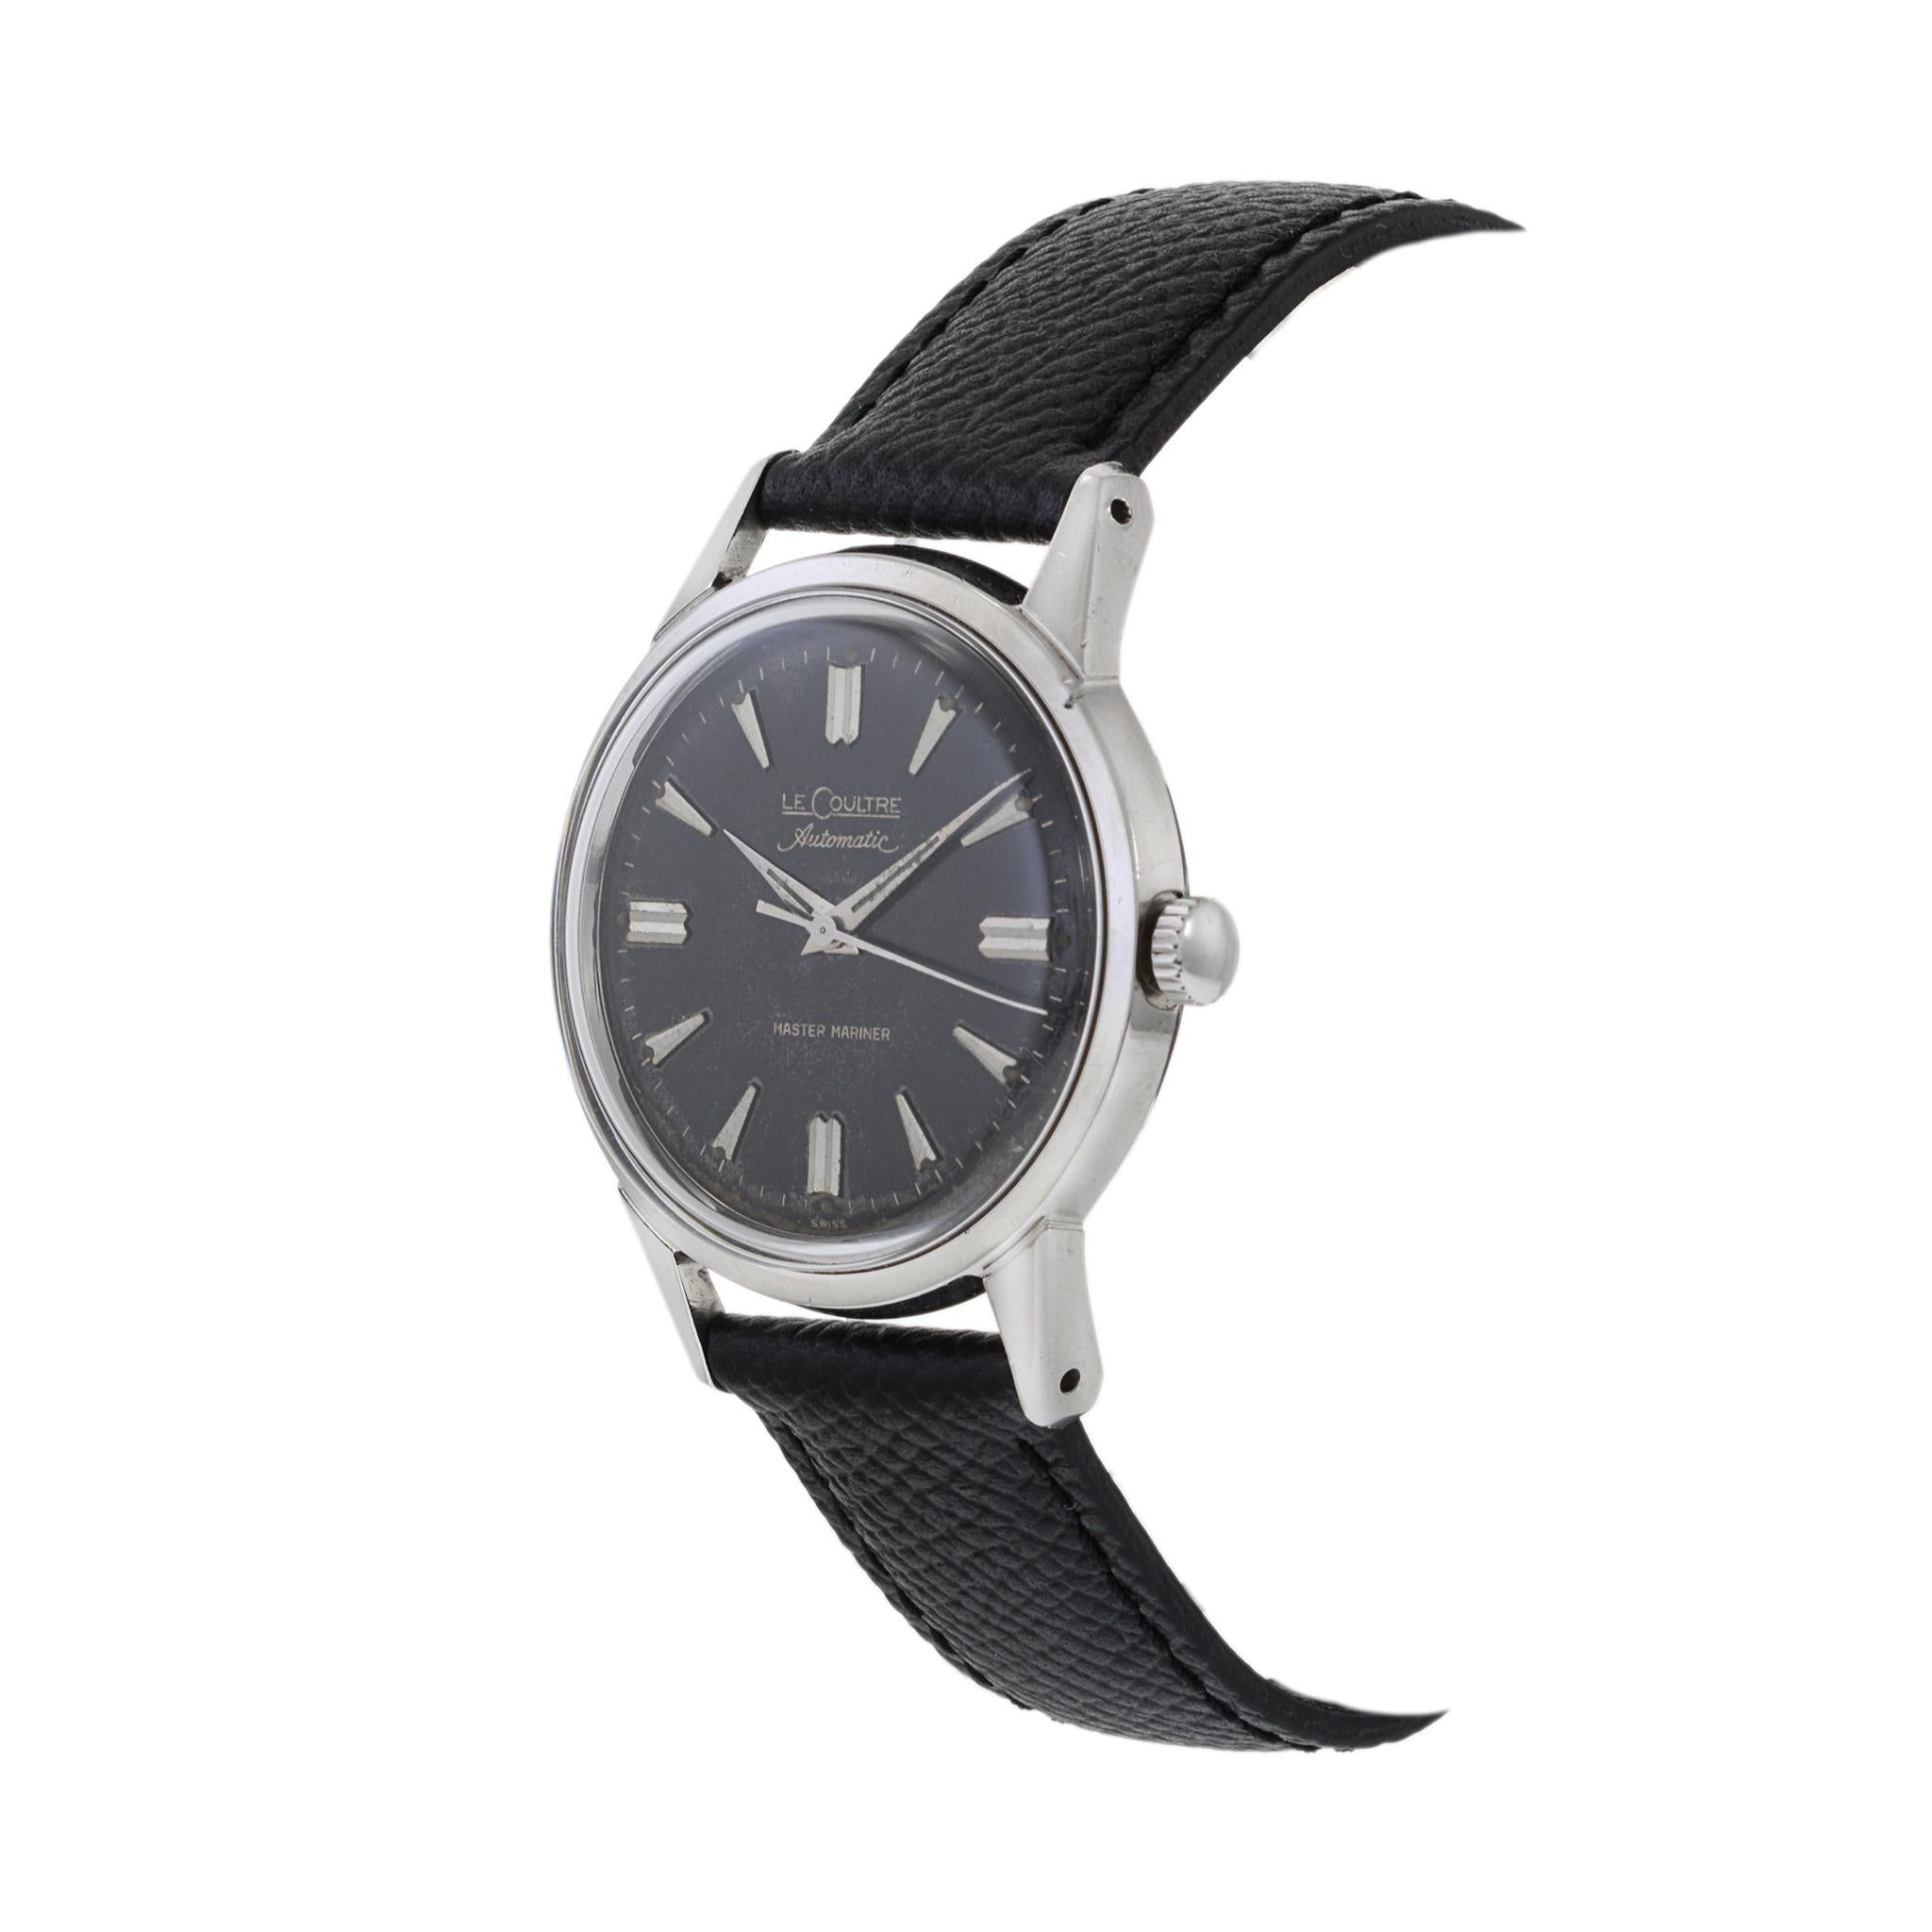 Dies ist eine äußerst seltene Jaeger-LeCoultre Master Mariner aus den 1950er Jahren. Diese Uhr ist wegen ihres schwarzen, vergoldeten Zifferblatts extrem selten.

Angetrieben wird diese Uhr vom renommierten JLC-Kaliber 476/3 mit 17 Lagersteinen und